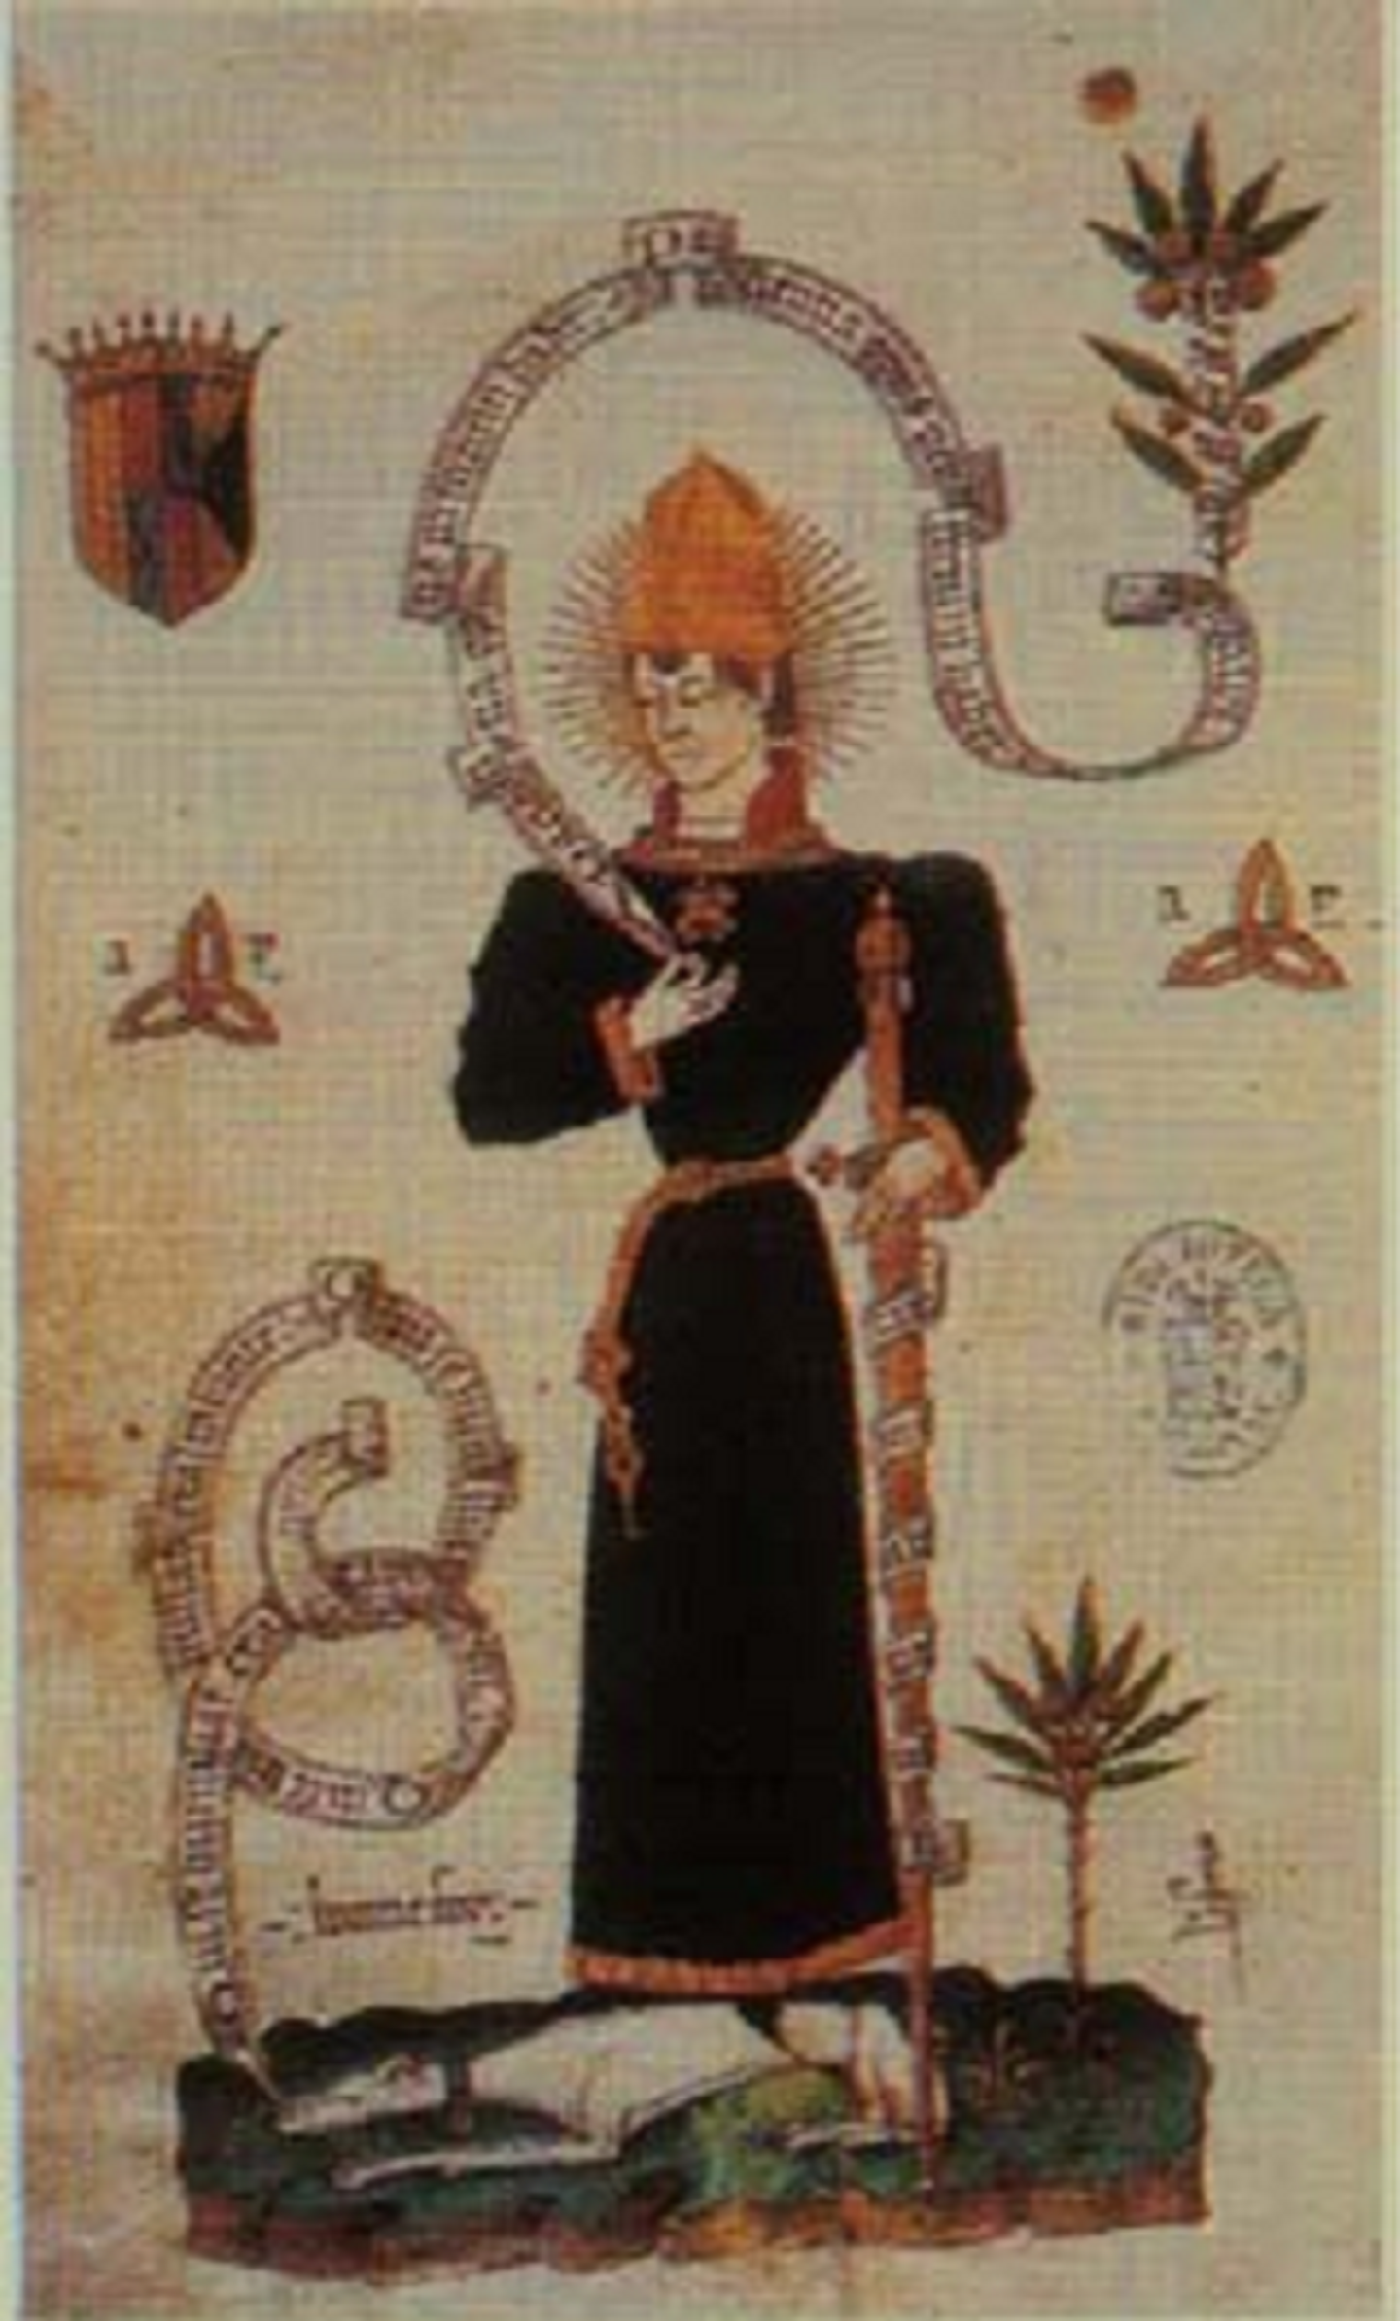 Nace Carlos de Viana, que sería asesinado para coronar a Fernando el Católico